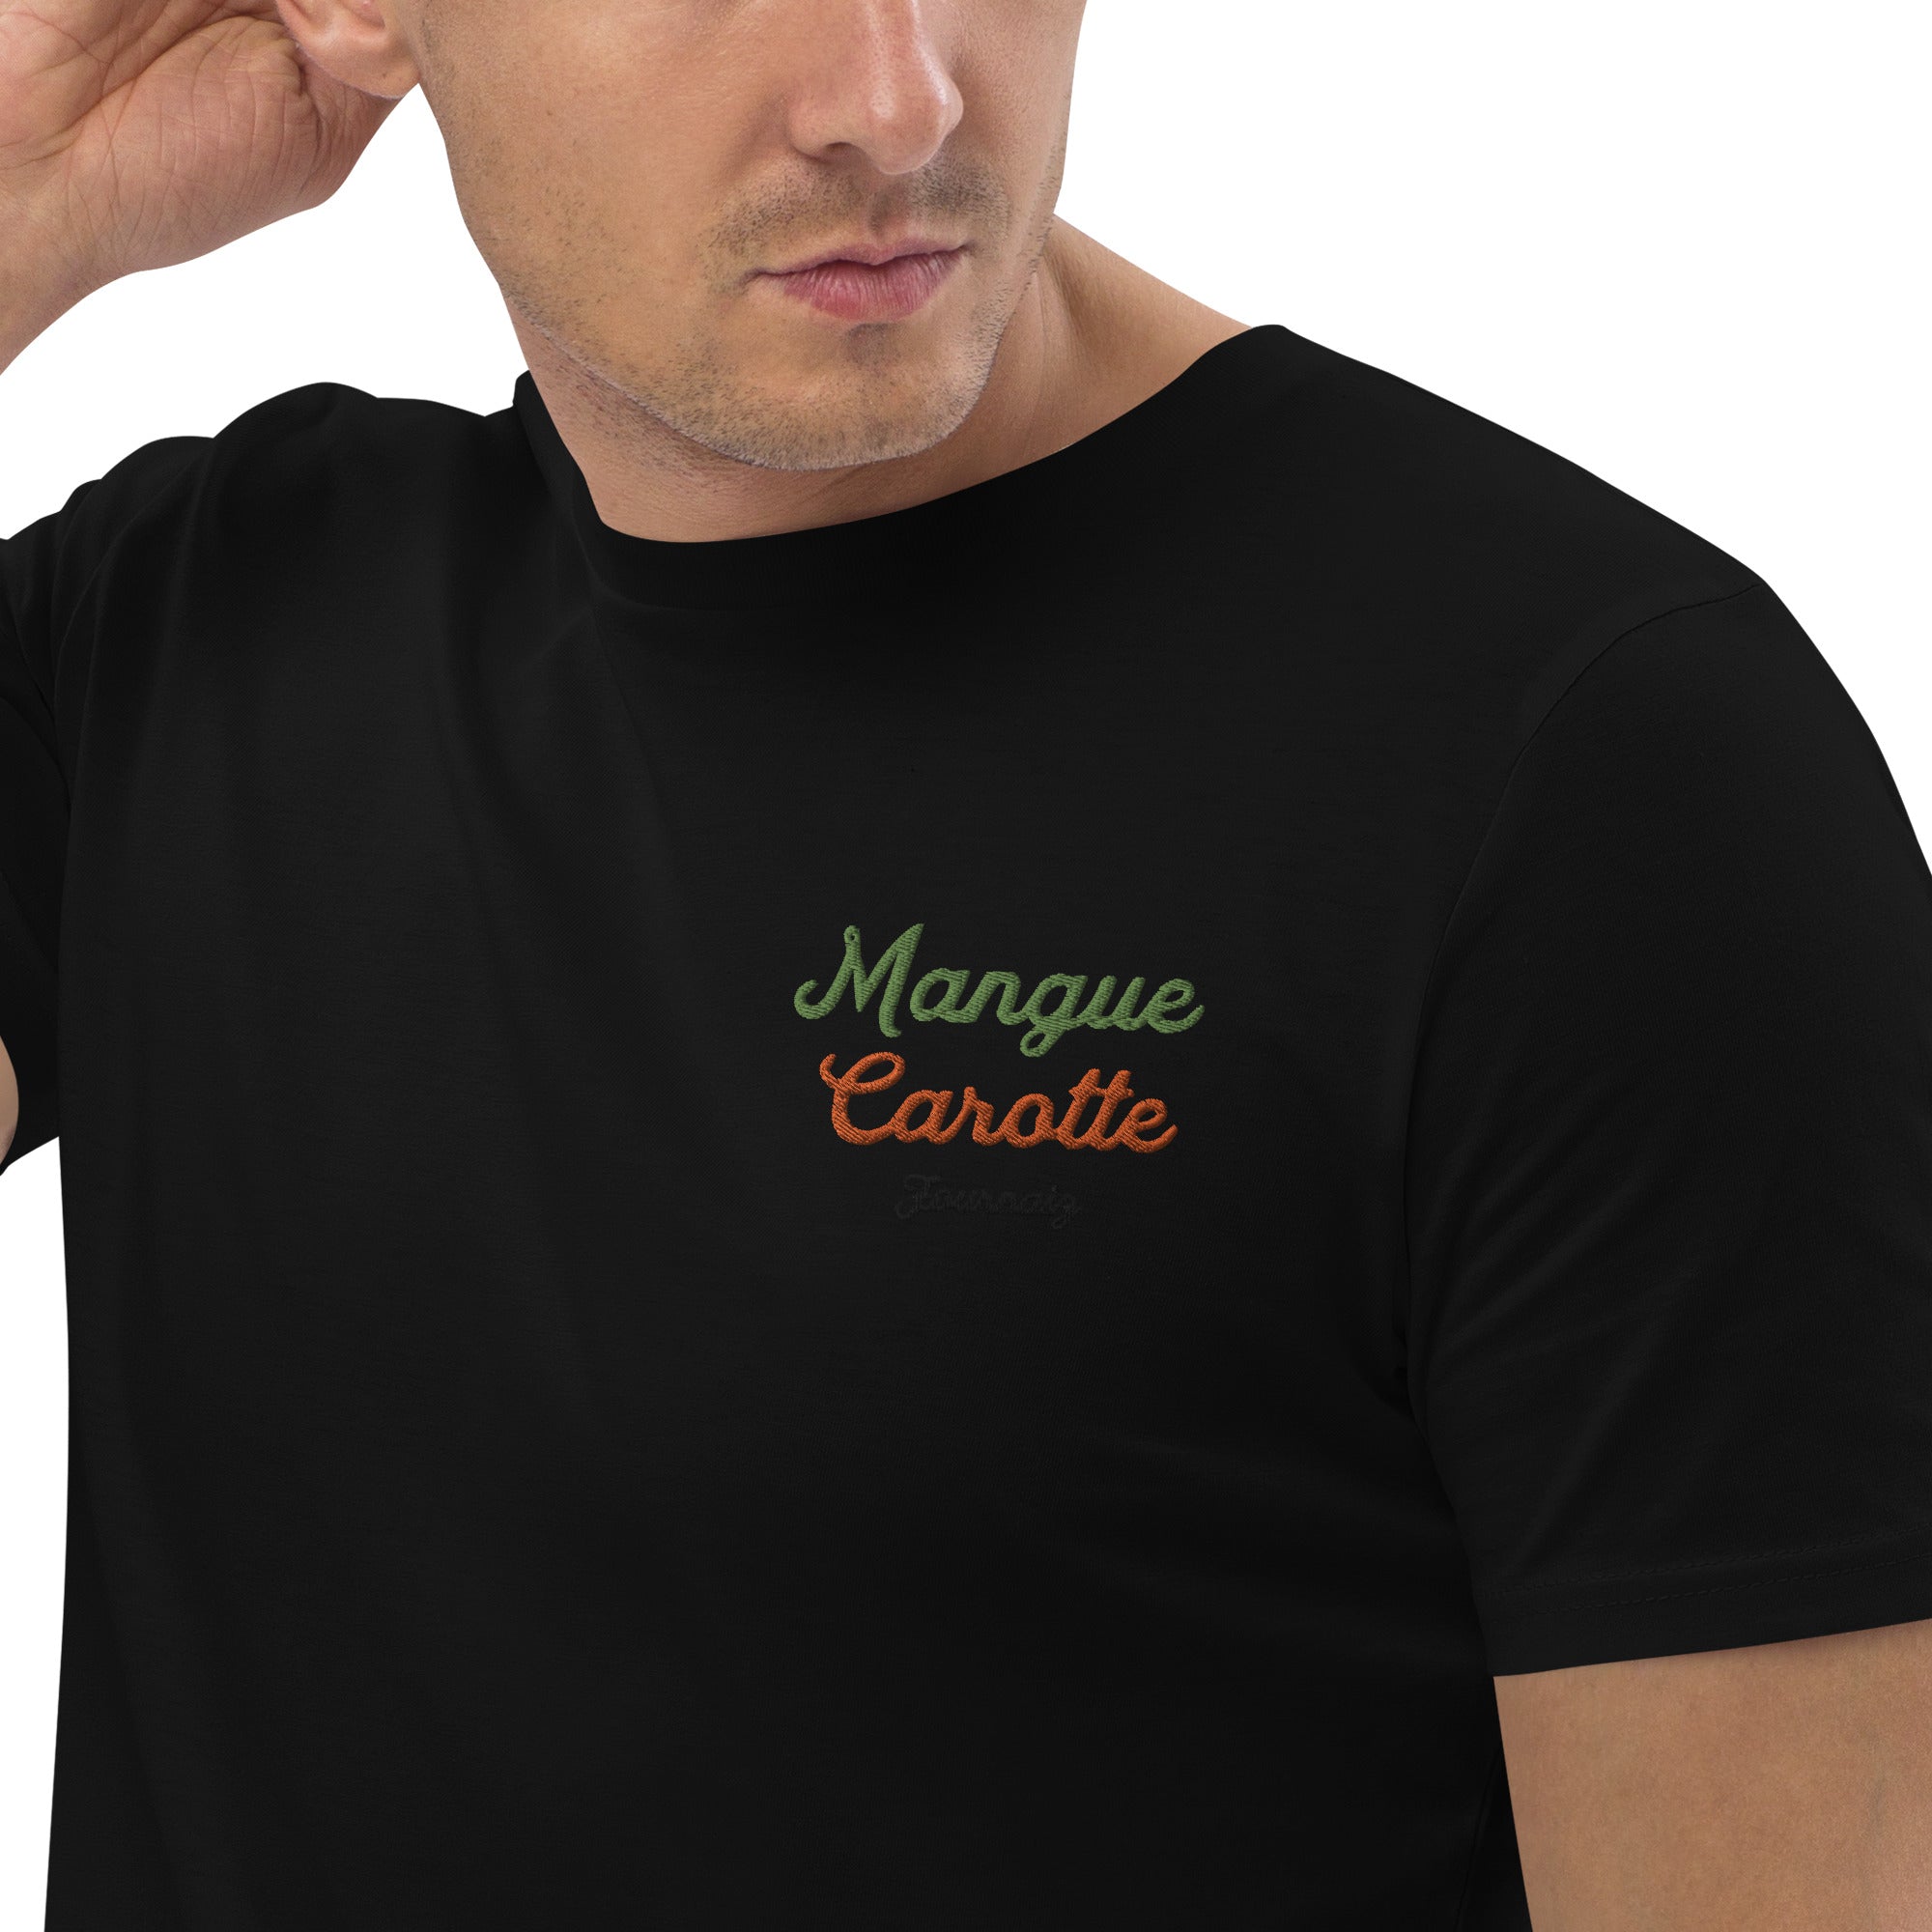 T-shirt Mangue Carotte (Coton Bio Brodé)